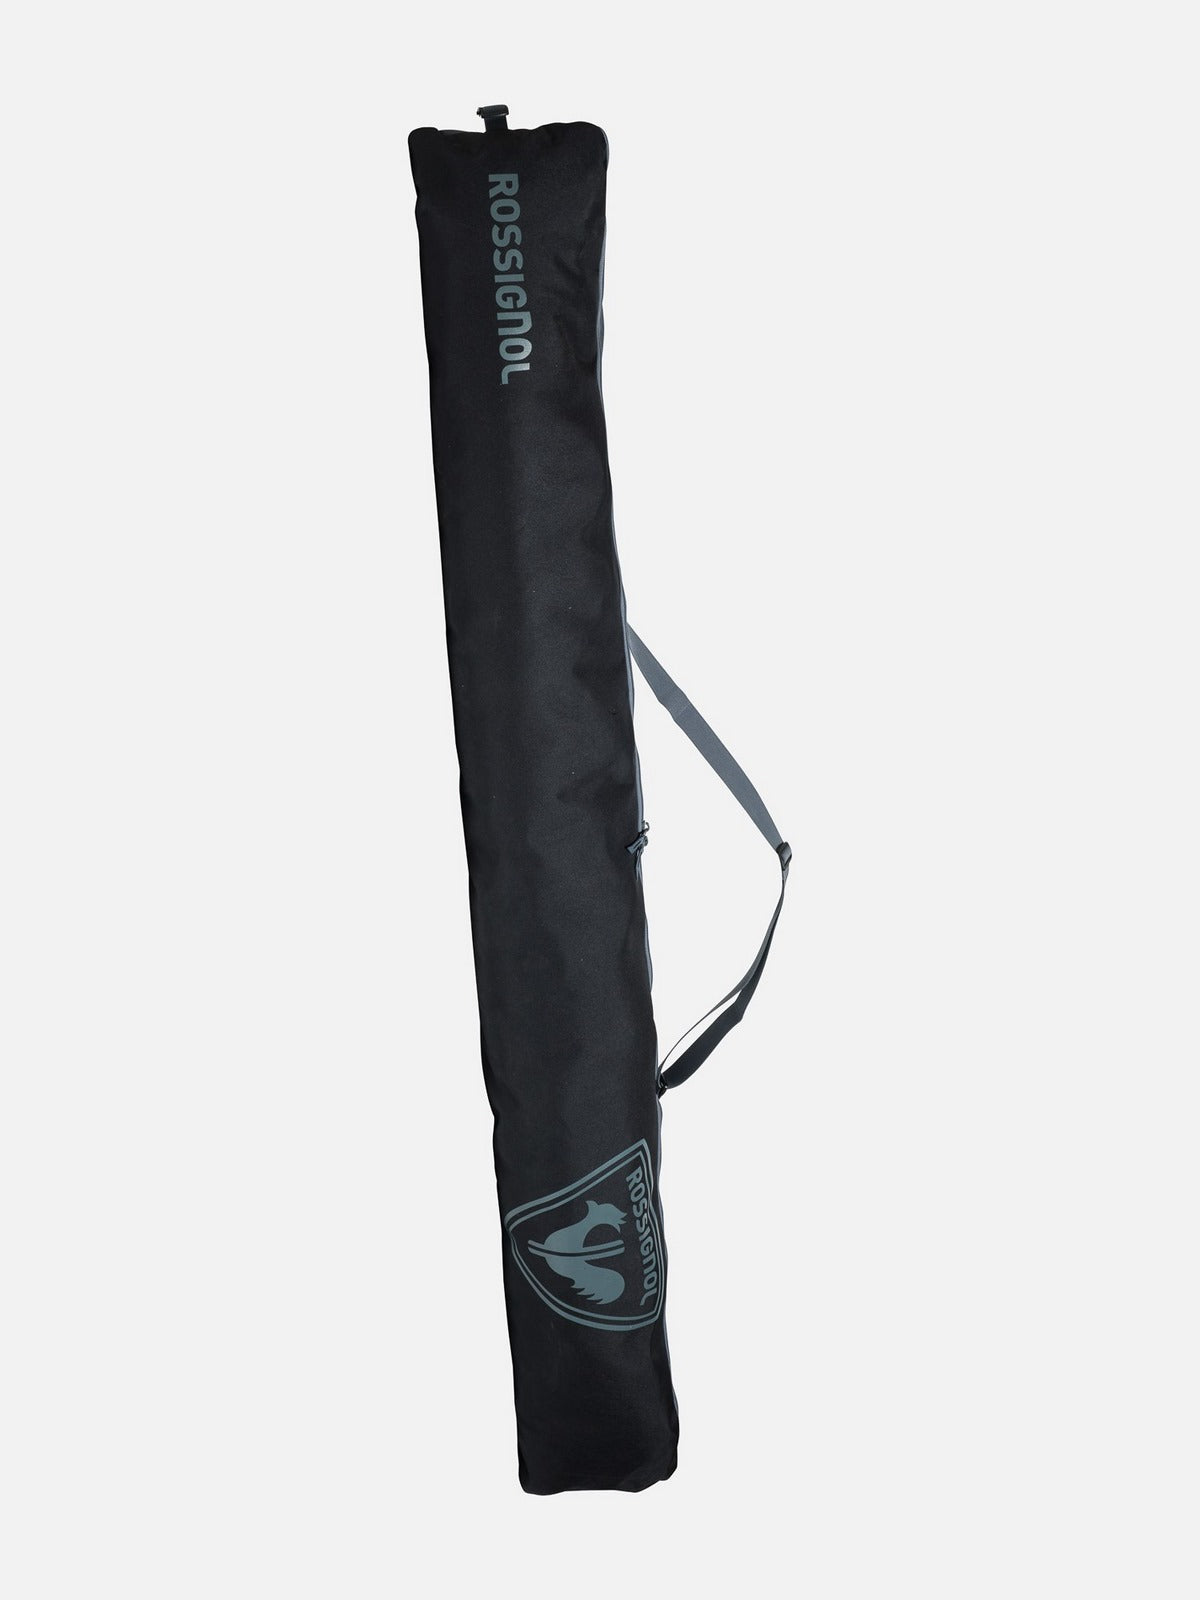 Pokrowiec na narty ROSSIGNOL TACTIC Ski Bag regulowany 140-180cm czarny